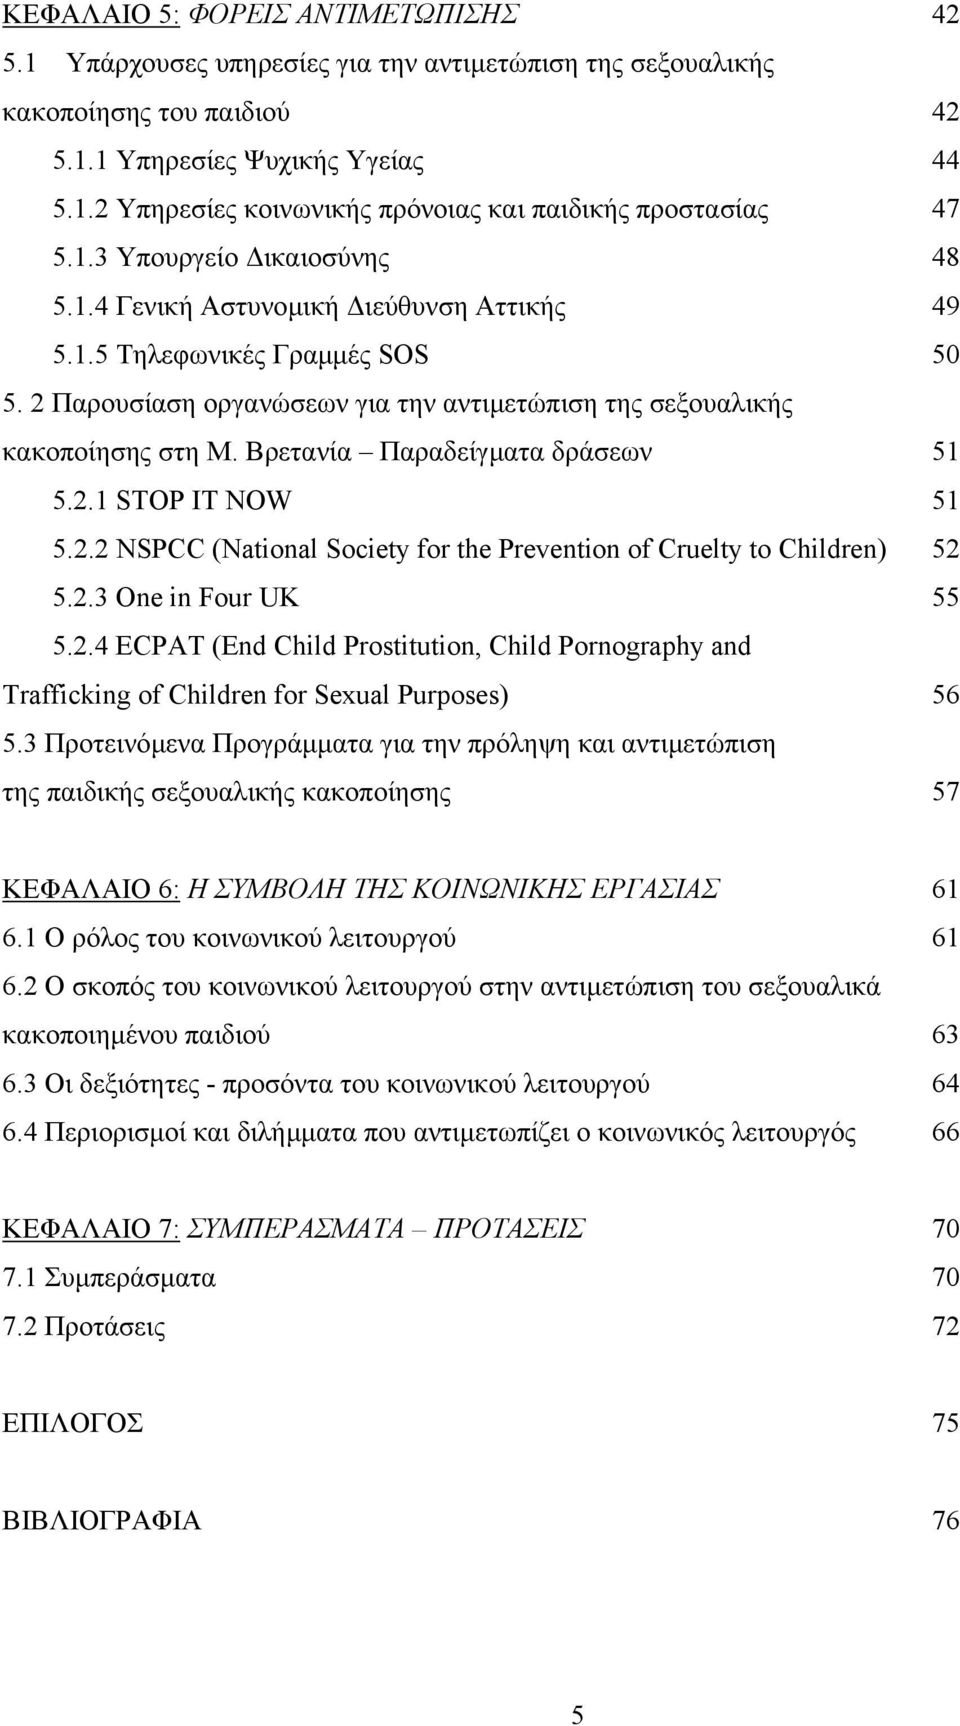 Βρετανία Παραδείγµατα δράσεων 51 5.2.1 STOP IT NOW 51 5.2.2 NSPCC (National Society for the Prevention of Cruelty to Children) 52 5.2.3 One in Four UK 55 5.2.4 ECPAT (End Child Prostitution, Child Pornography and Trafficking of Children for Sexual Purposes) 56 5.